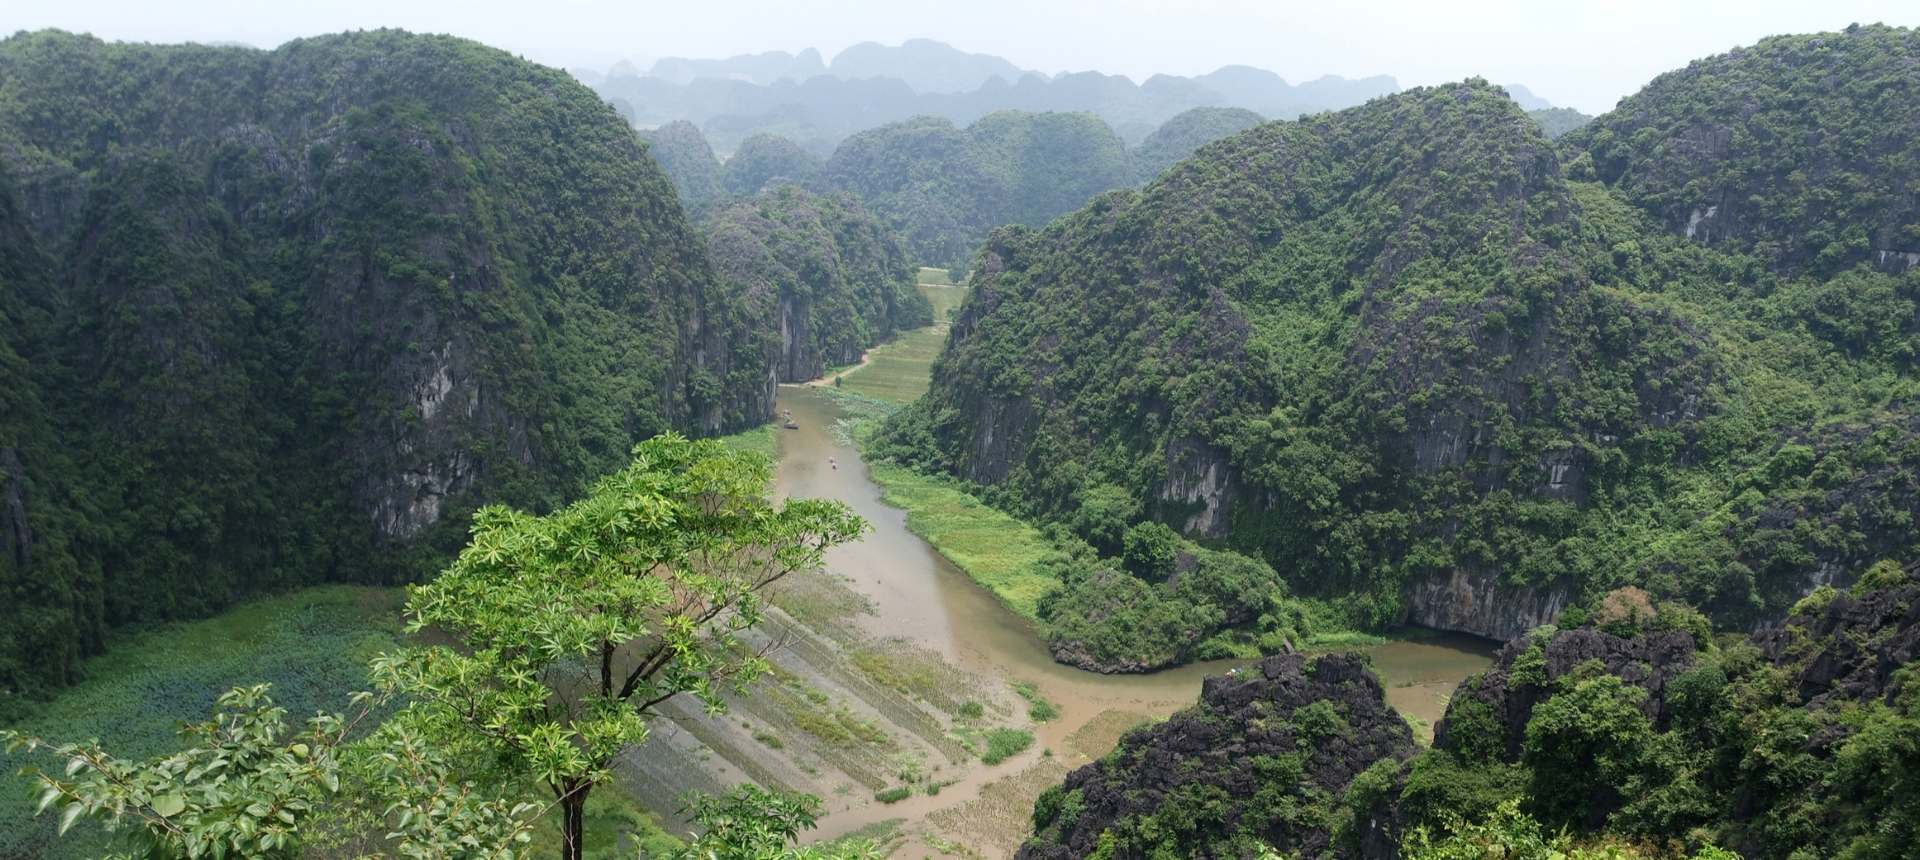 Dit zijn de 6 mooiste plekken van Vietnam